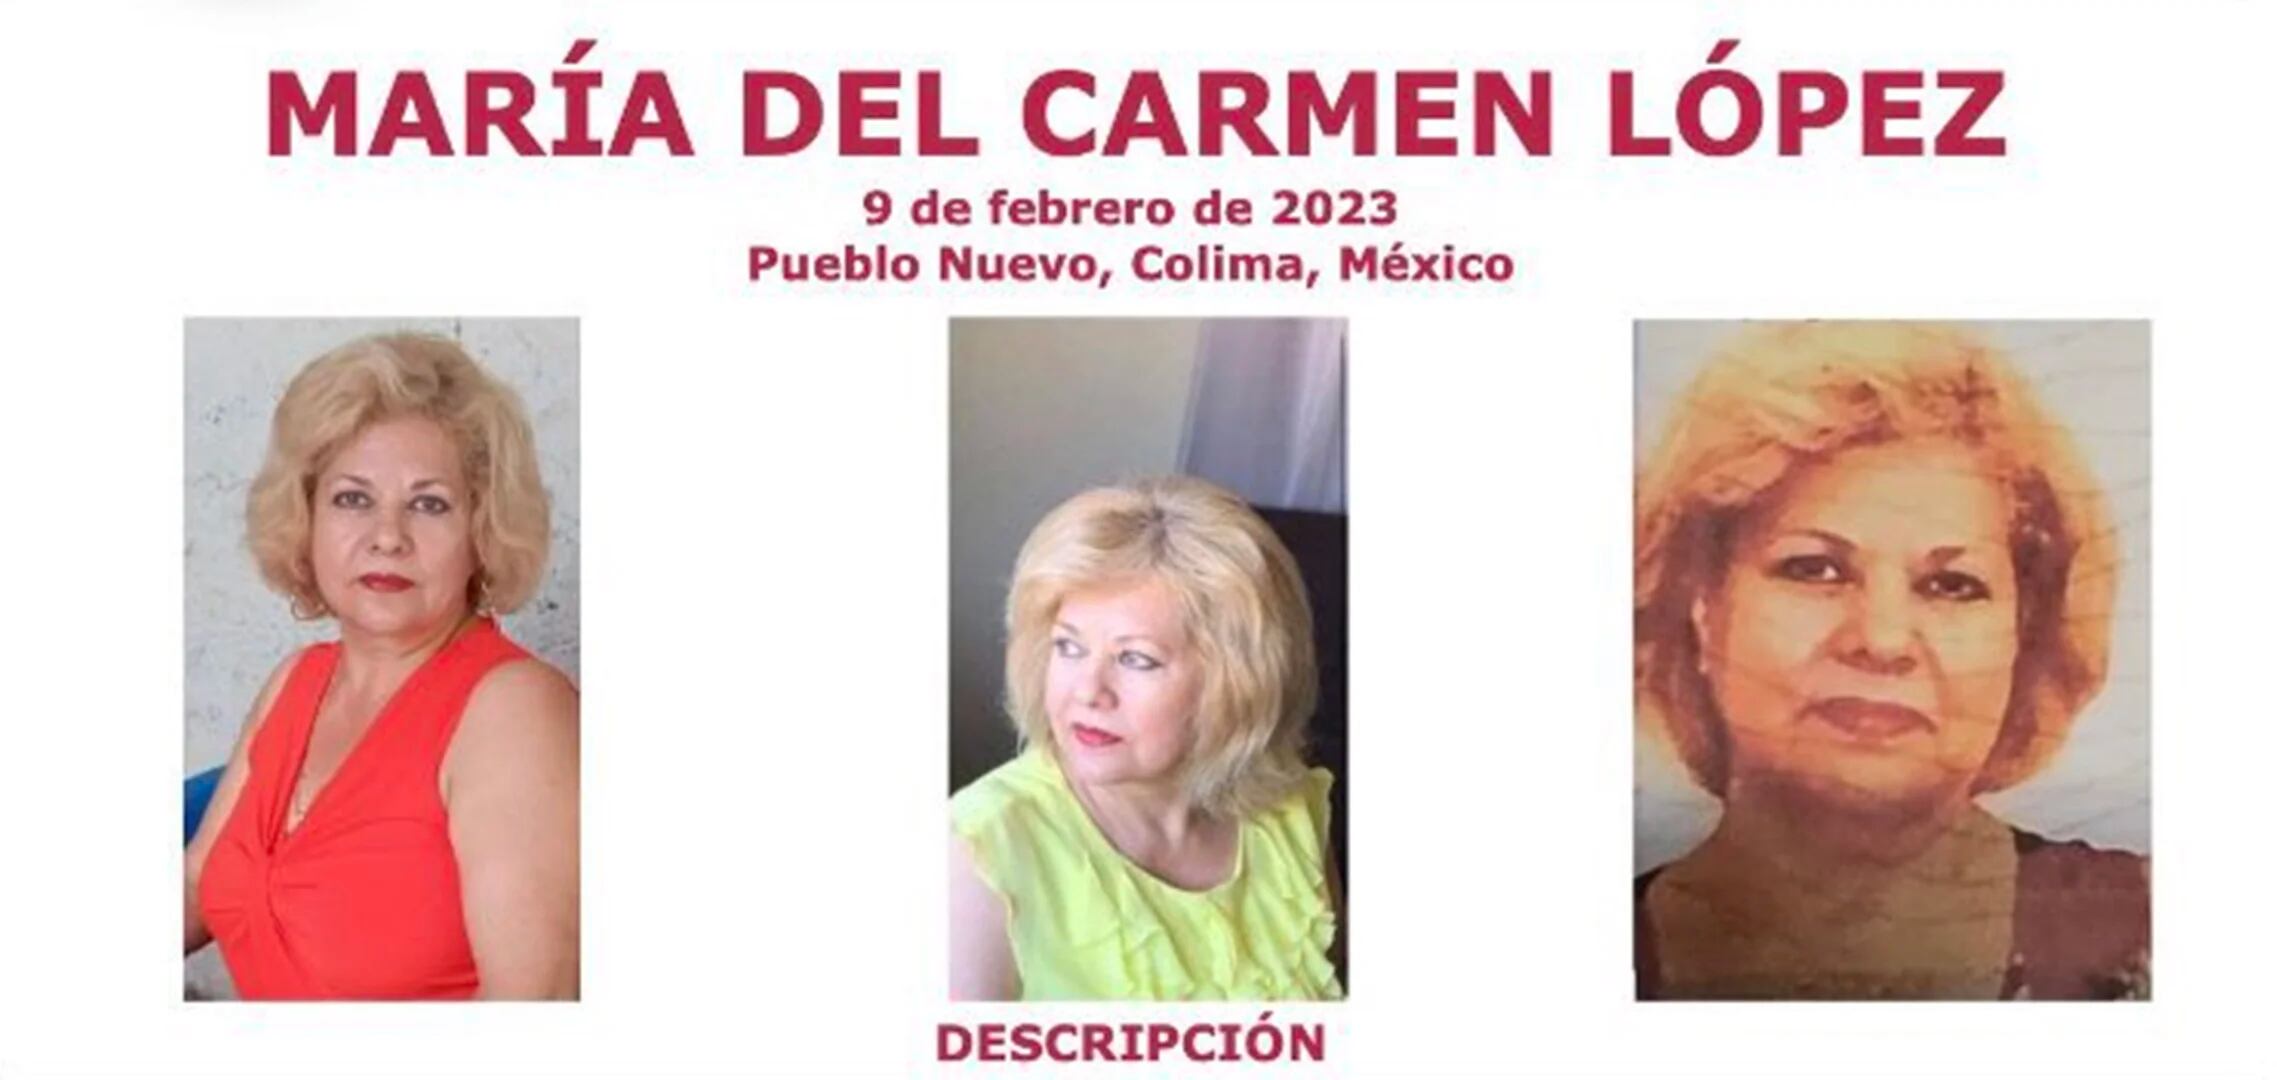 Mónica De León Barba Fue Secuestrada En México Y El Fbi Ofrece Usd 40 Mil Por Su Localización